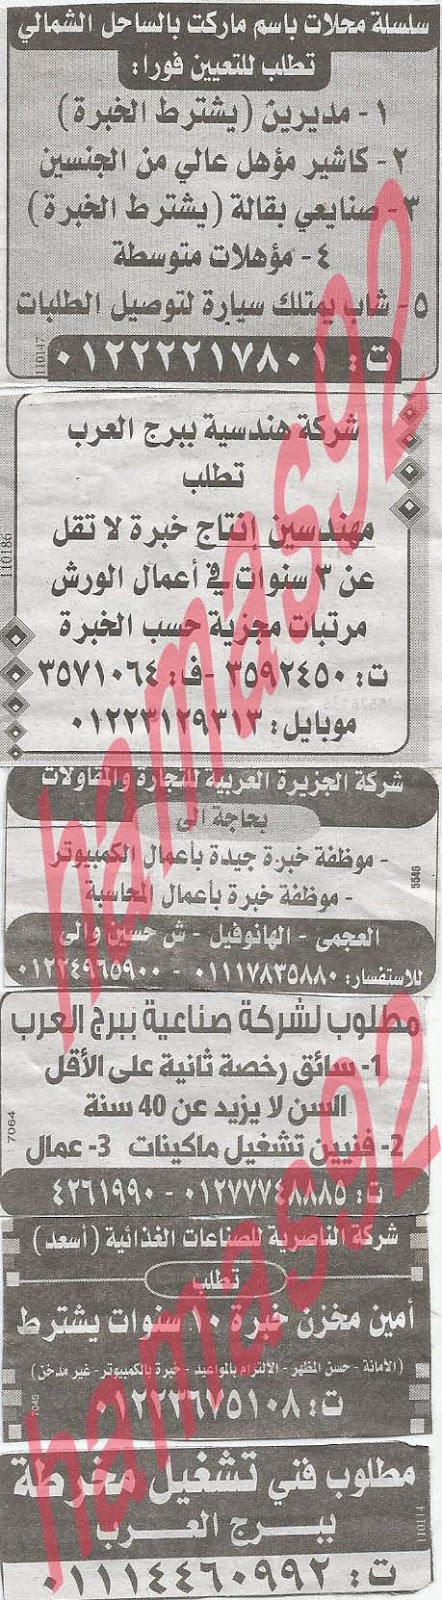 وظائف خالية فى جريدة الوسيط الاسكندرية الاحد 16-06-2013 %D9%88+%D8%B3+%D8%B3+12